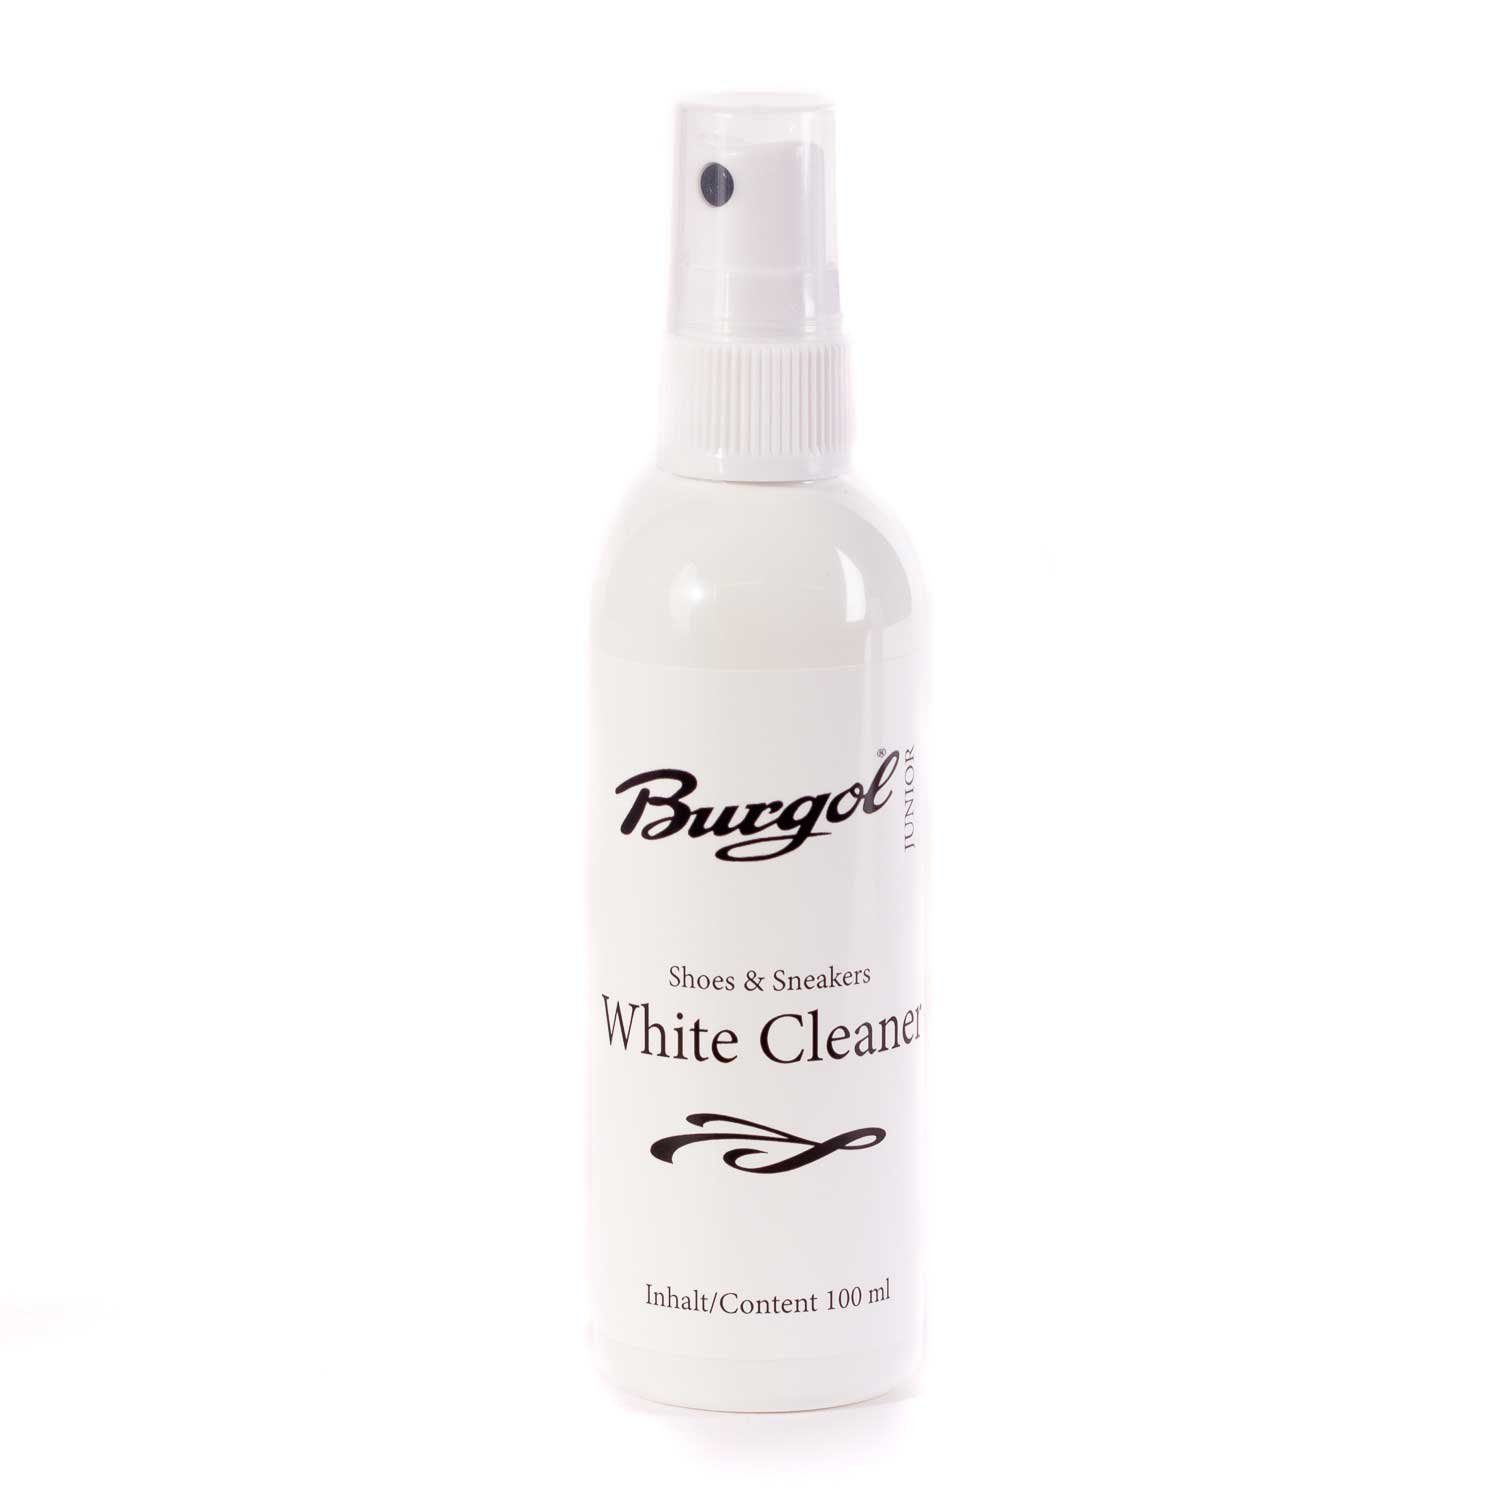 für glatte weißen Leder-Pflegespray Reinigung Oberflächen Junior Cleaner Burgol White -